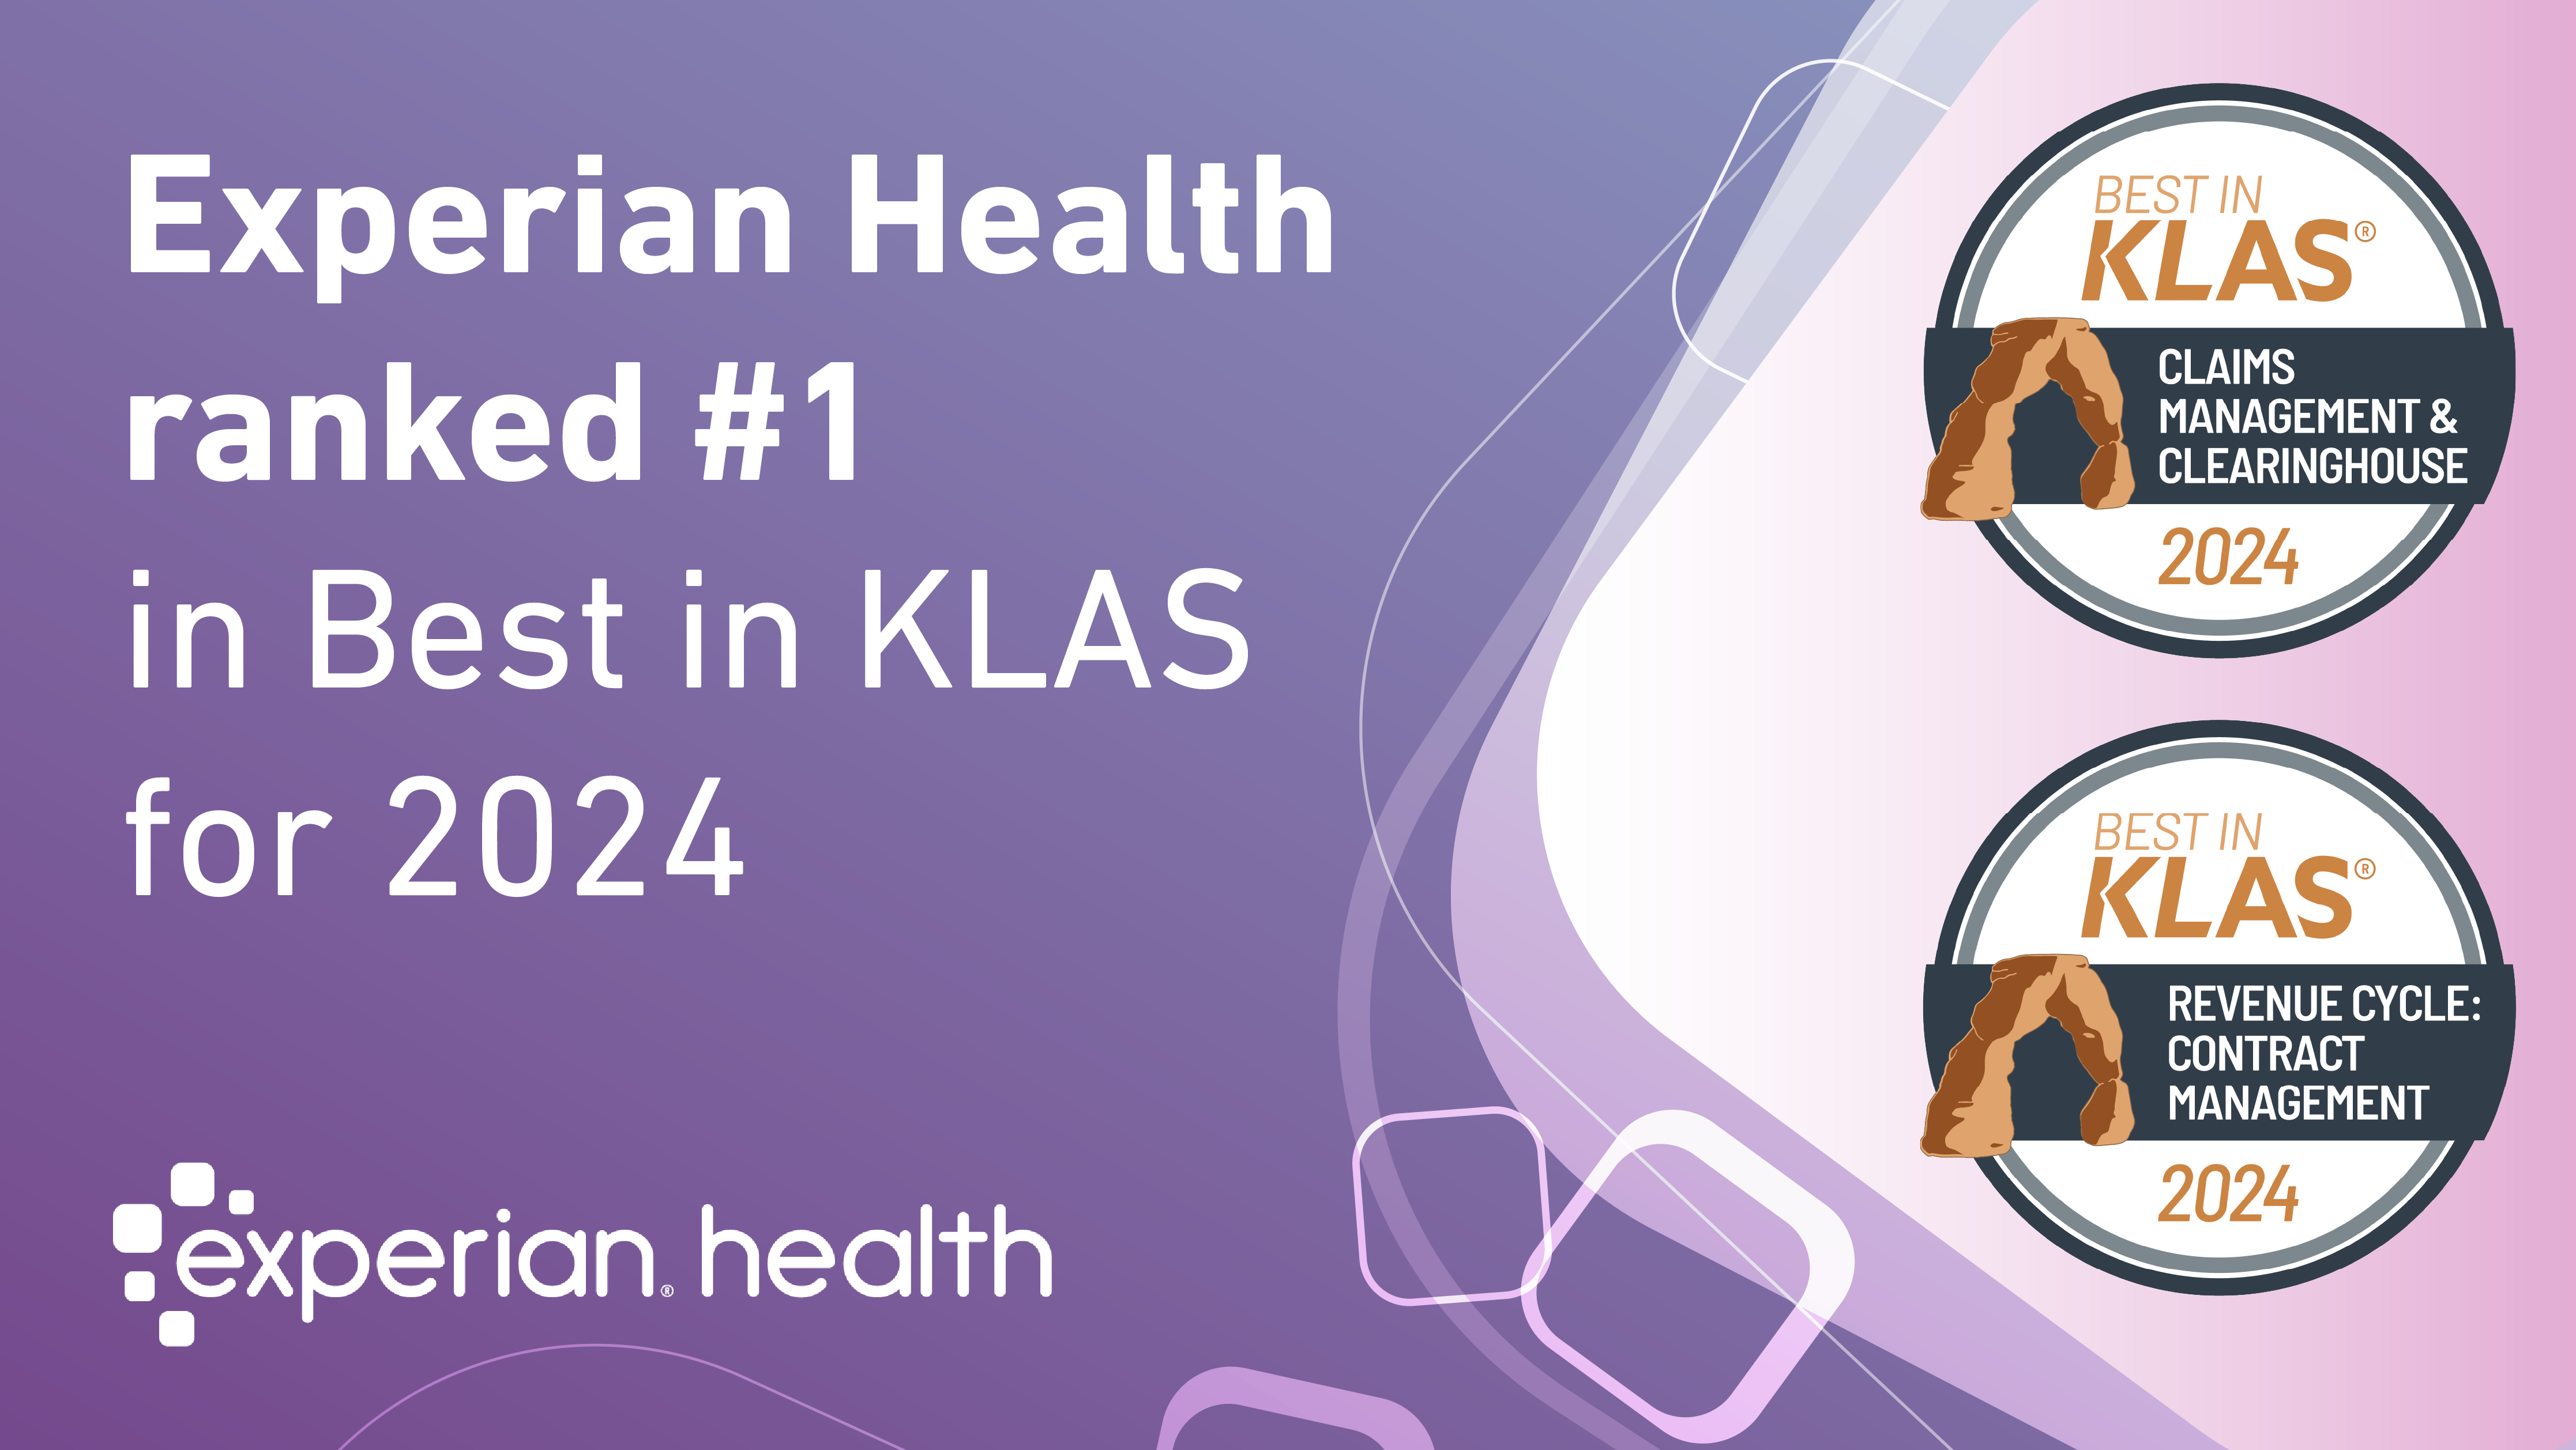 Experian Health ranked #1 in Best in KLAS for 2024